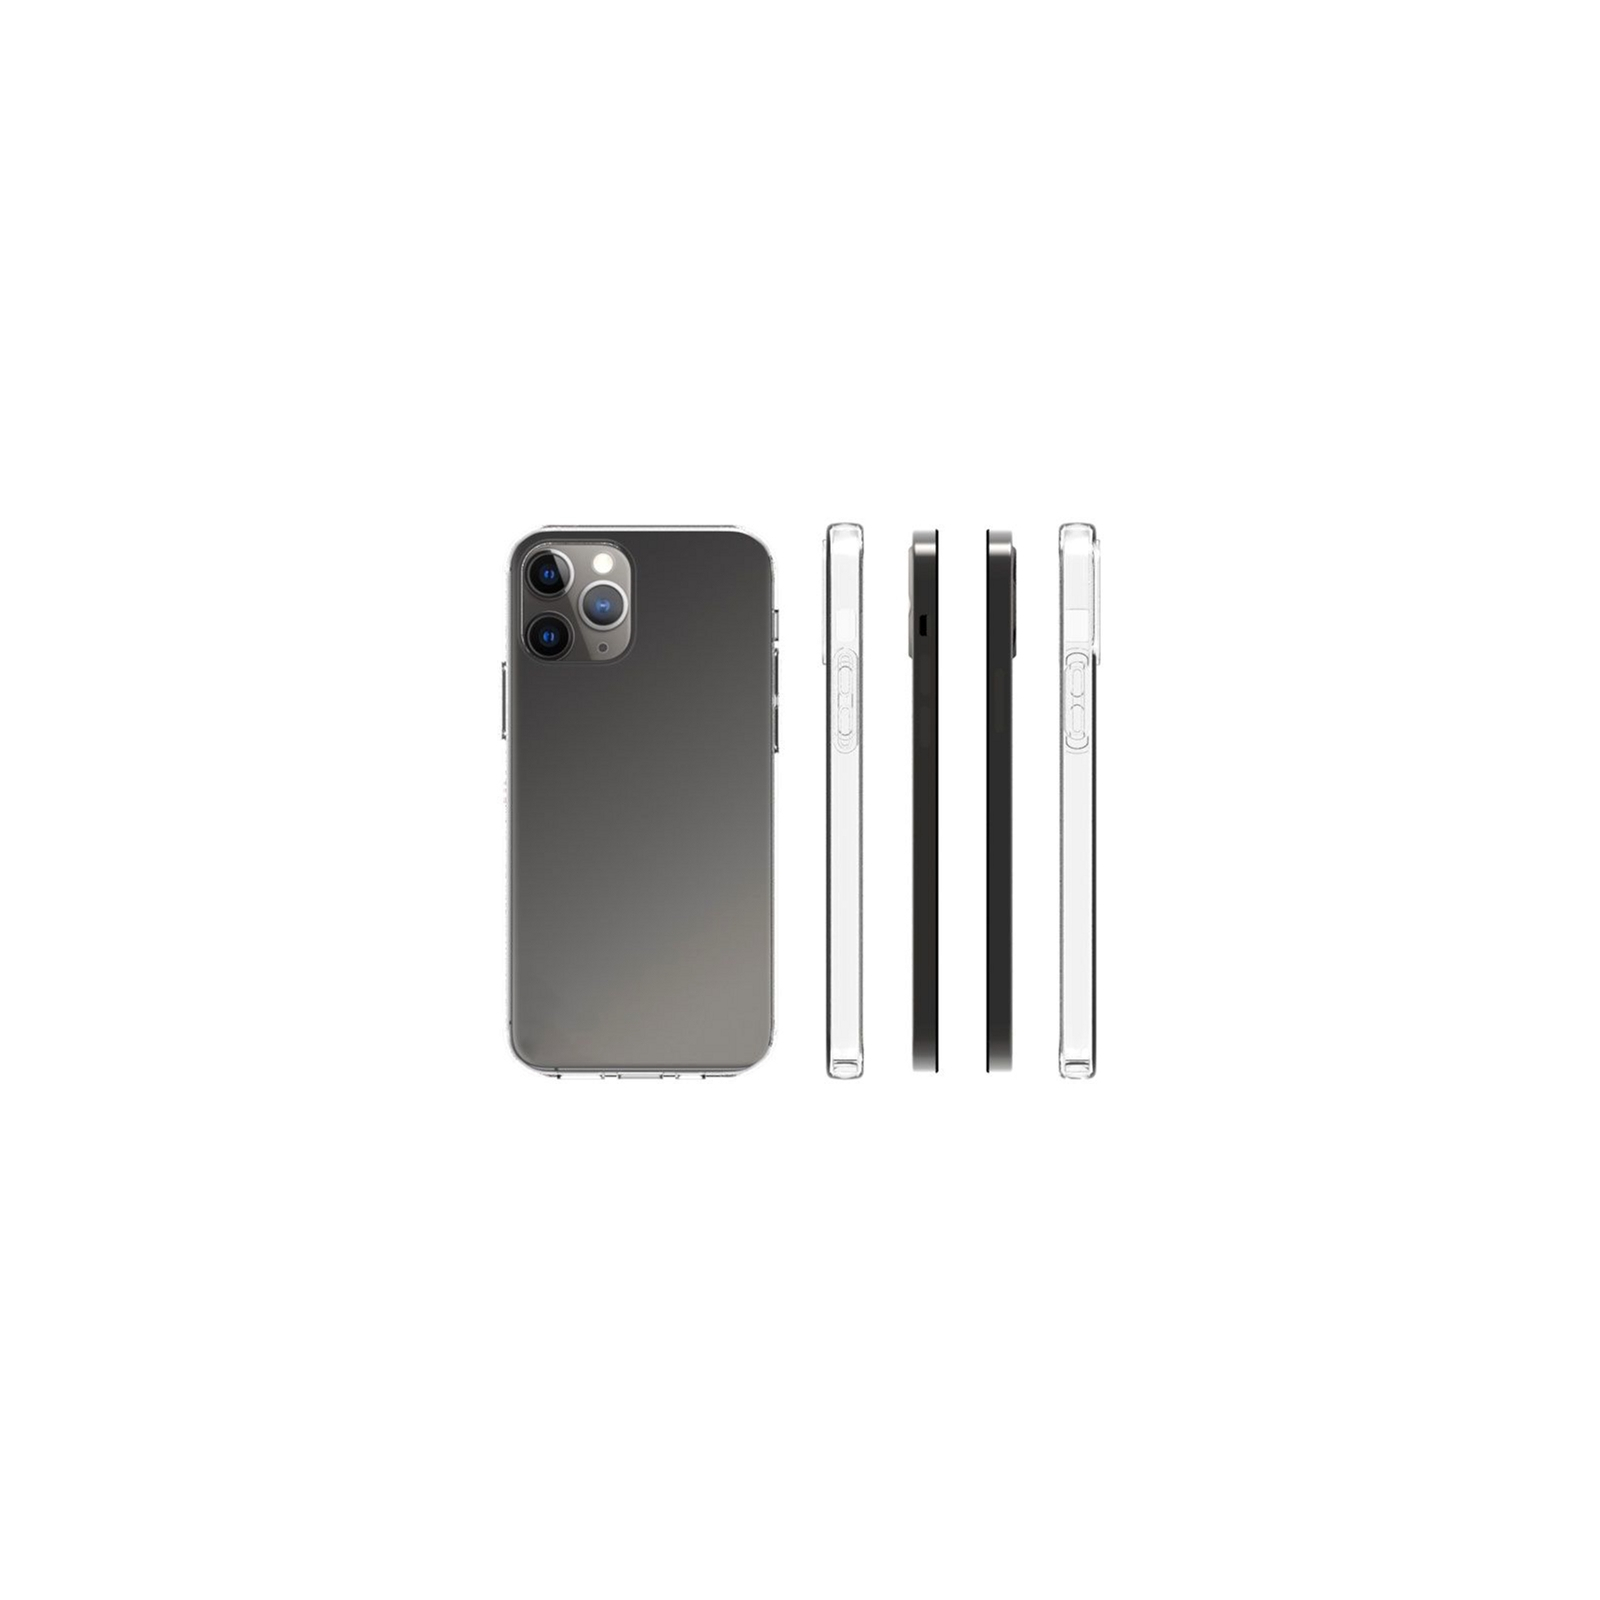 Чехол для мобильного телефона Drobak Acrylic Case with Airbag Apple iPhone 12 Mini (707025) изображение 2